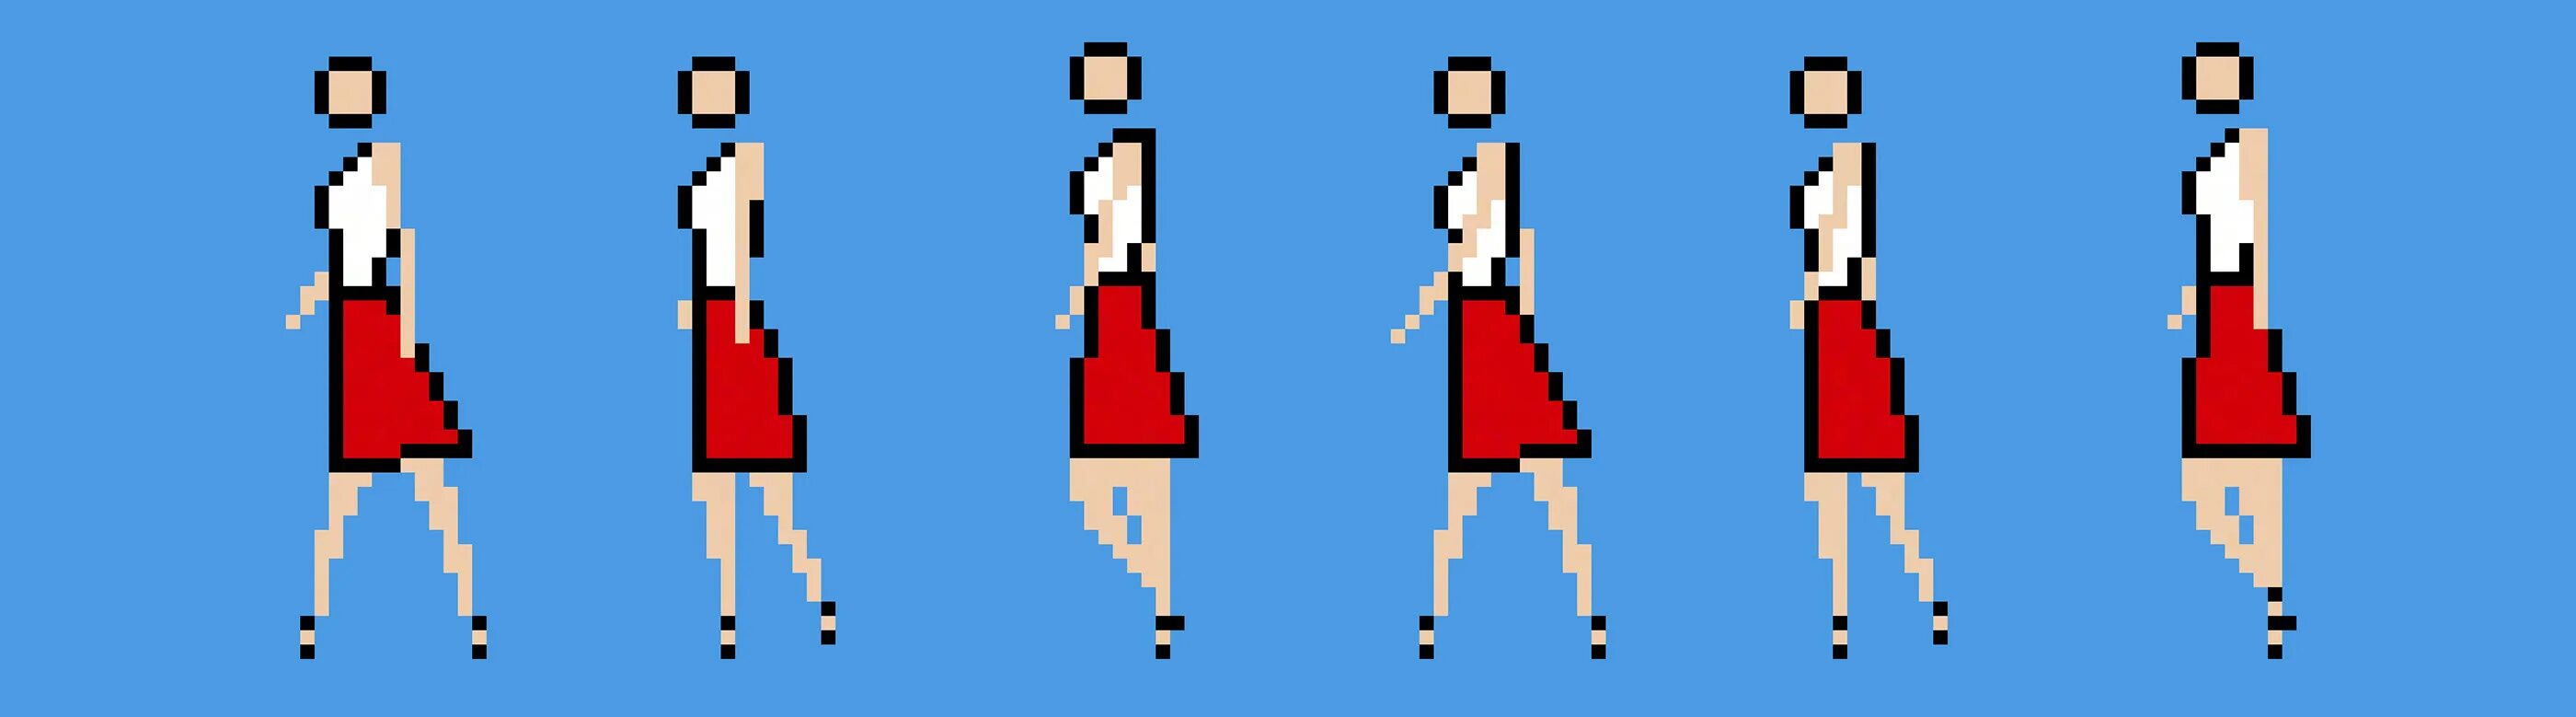 Мод на анимации танцев. Анимация ходьбы. Пиксельная ходьба. Ходьба пиксель арт. Пиксельная анимация ходьбы.